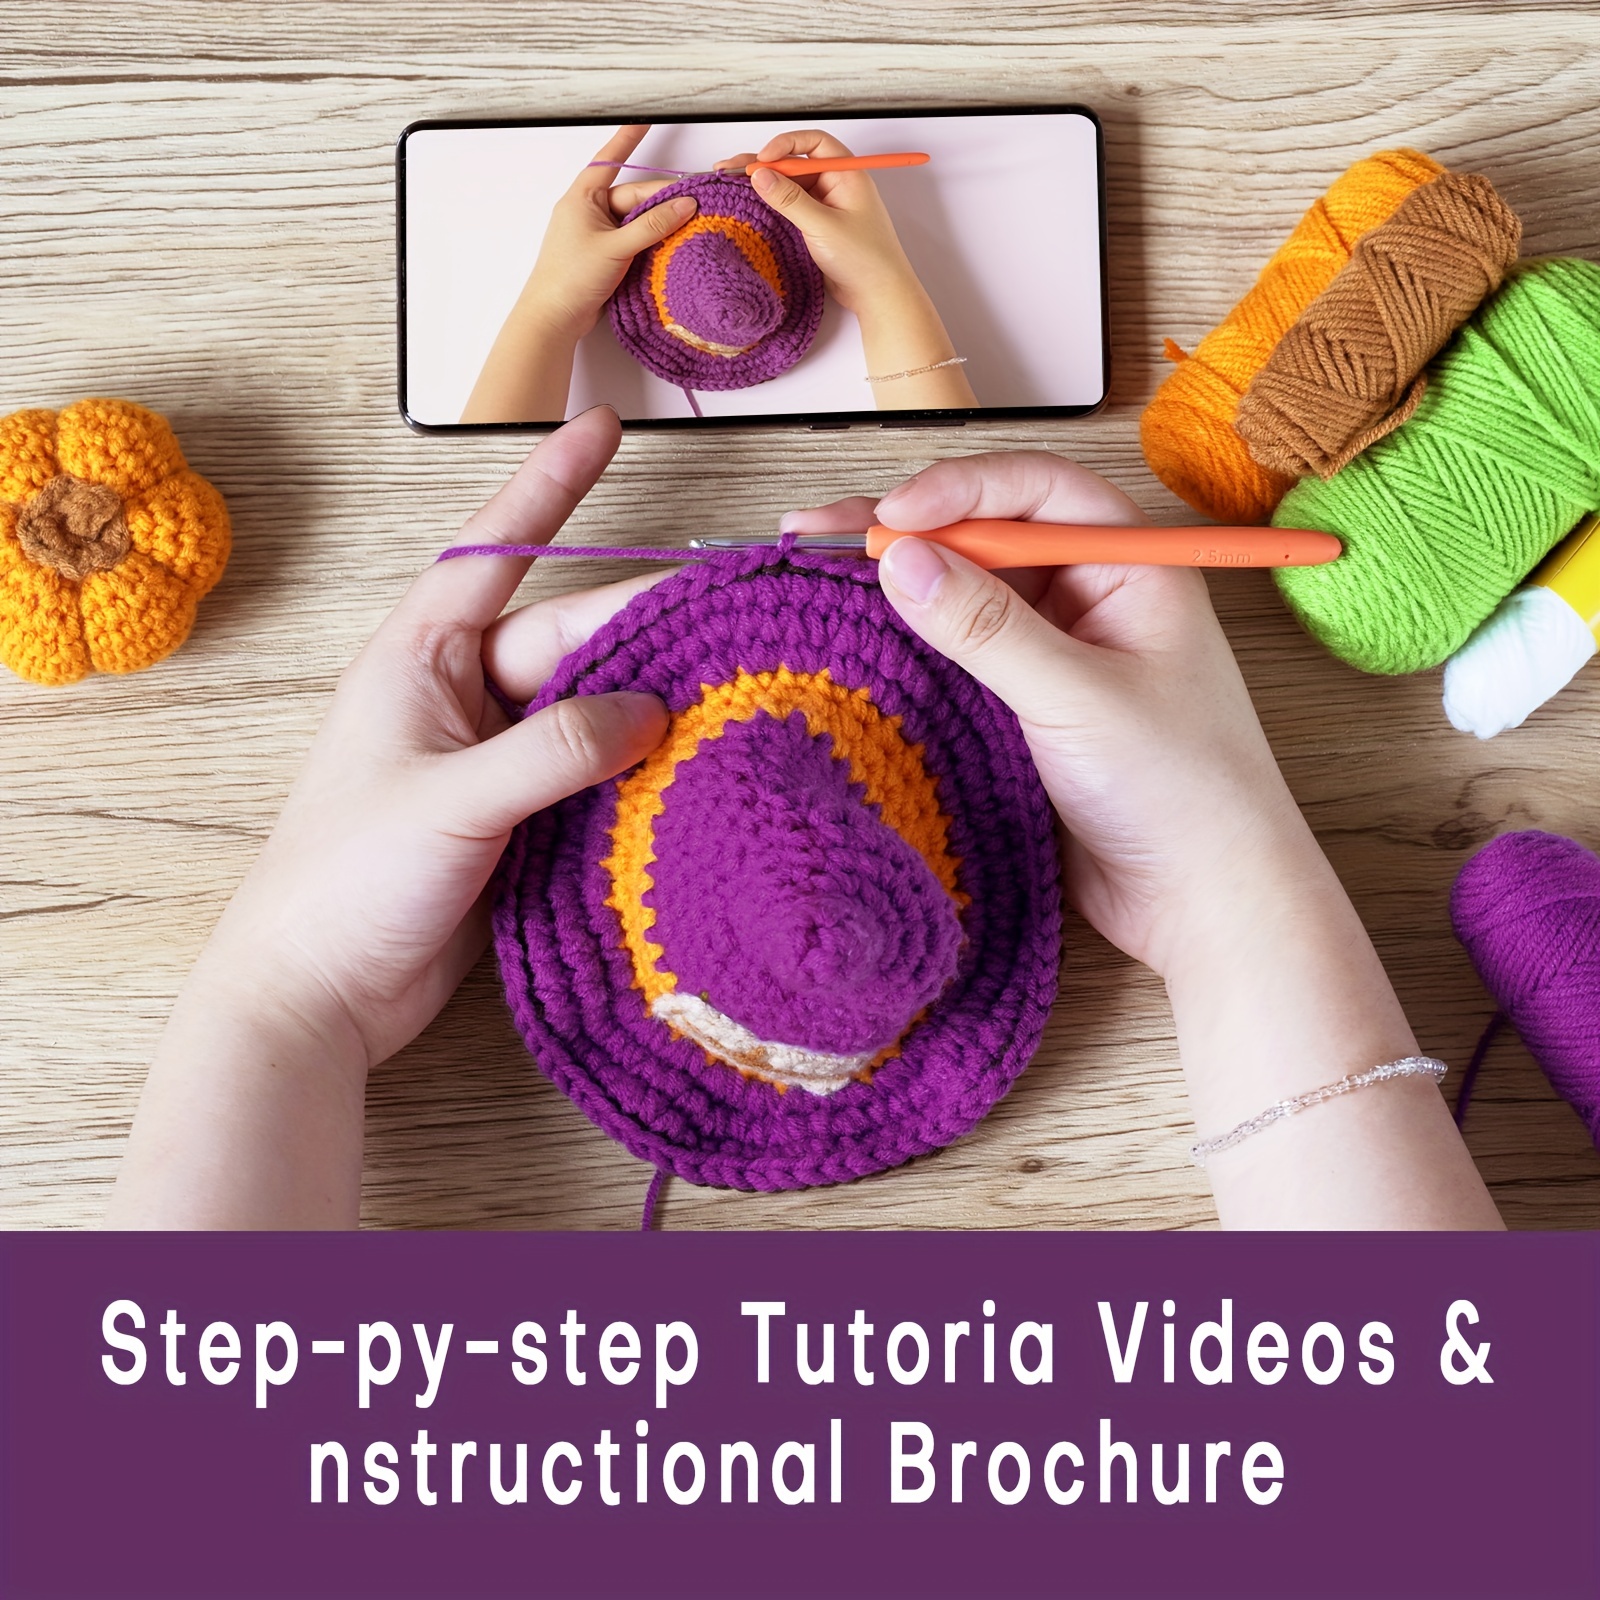 Beginner Crochet Guide - Building Your Crochet Starter Kit